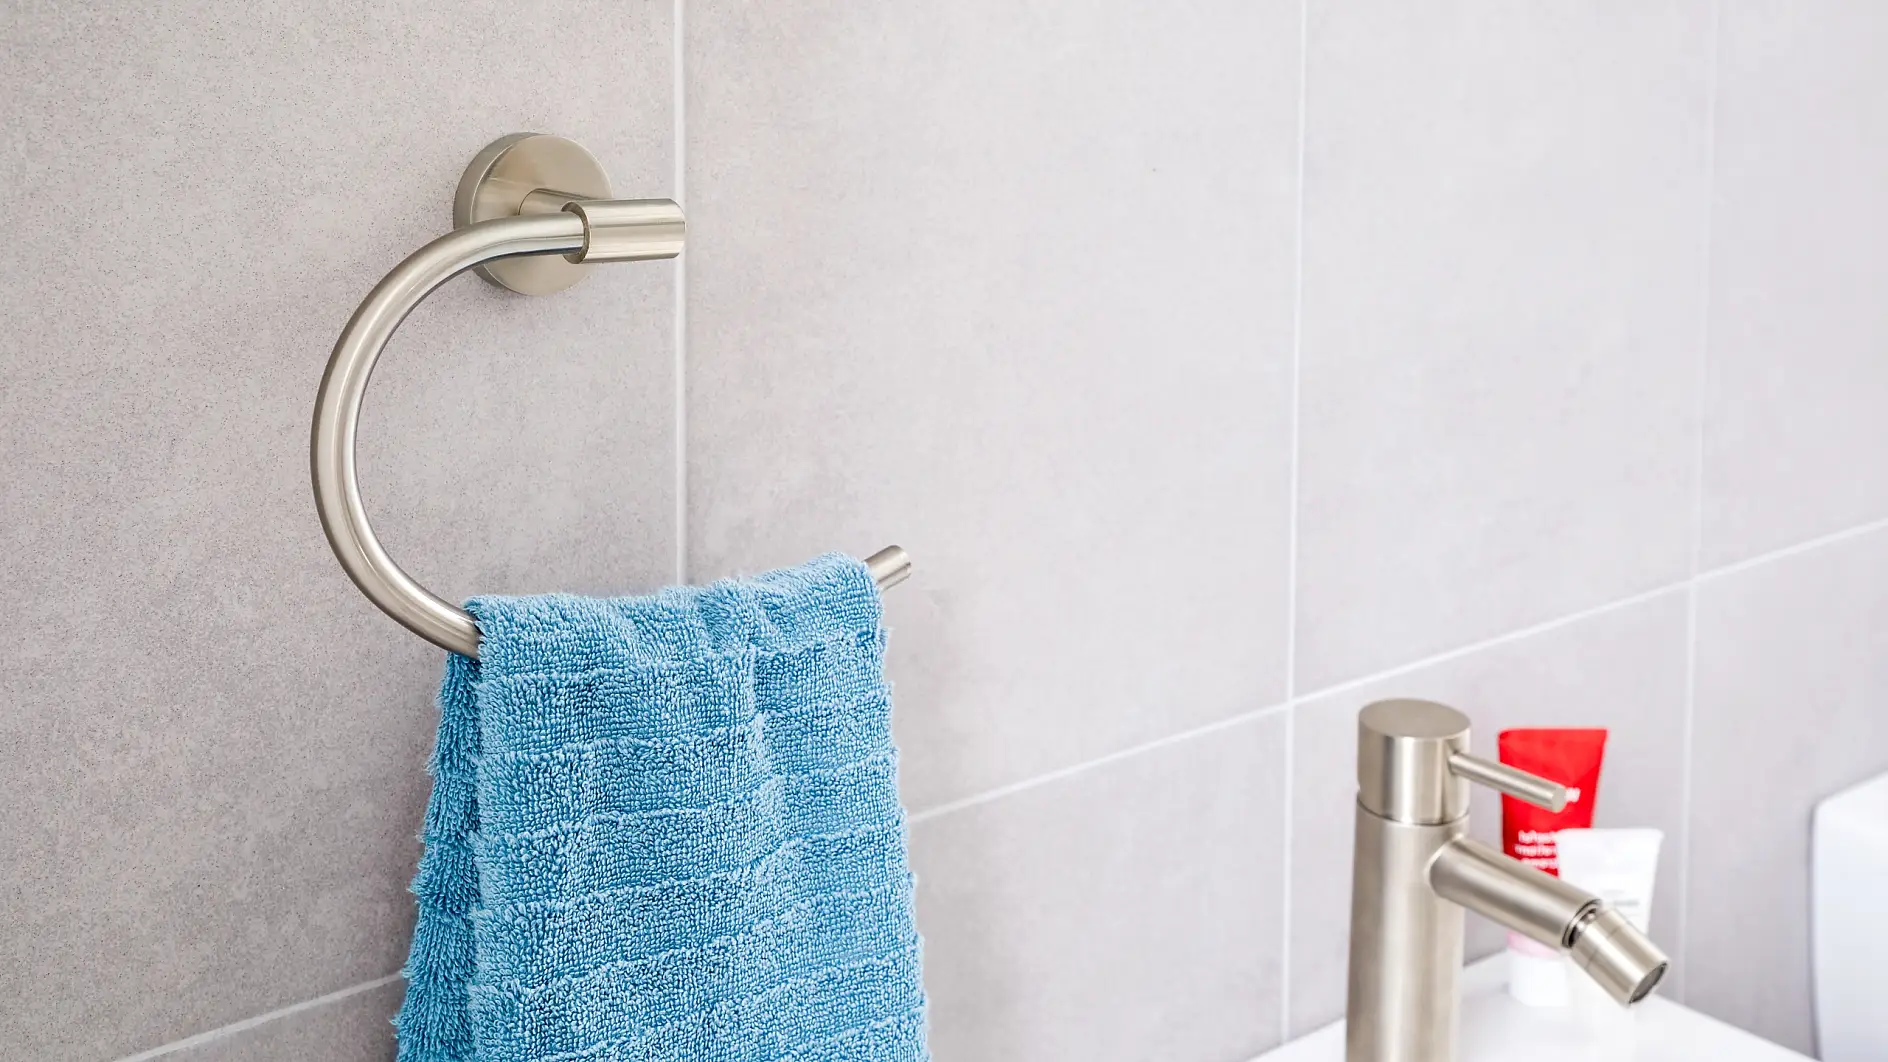 Szlachetna konstrukcja spełniająca wymogi efektywnego użytkowania, dzięki której ręczniki są utrzymywane w pobliżu zlewu.